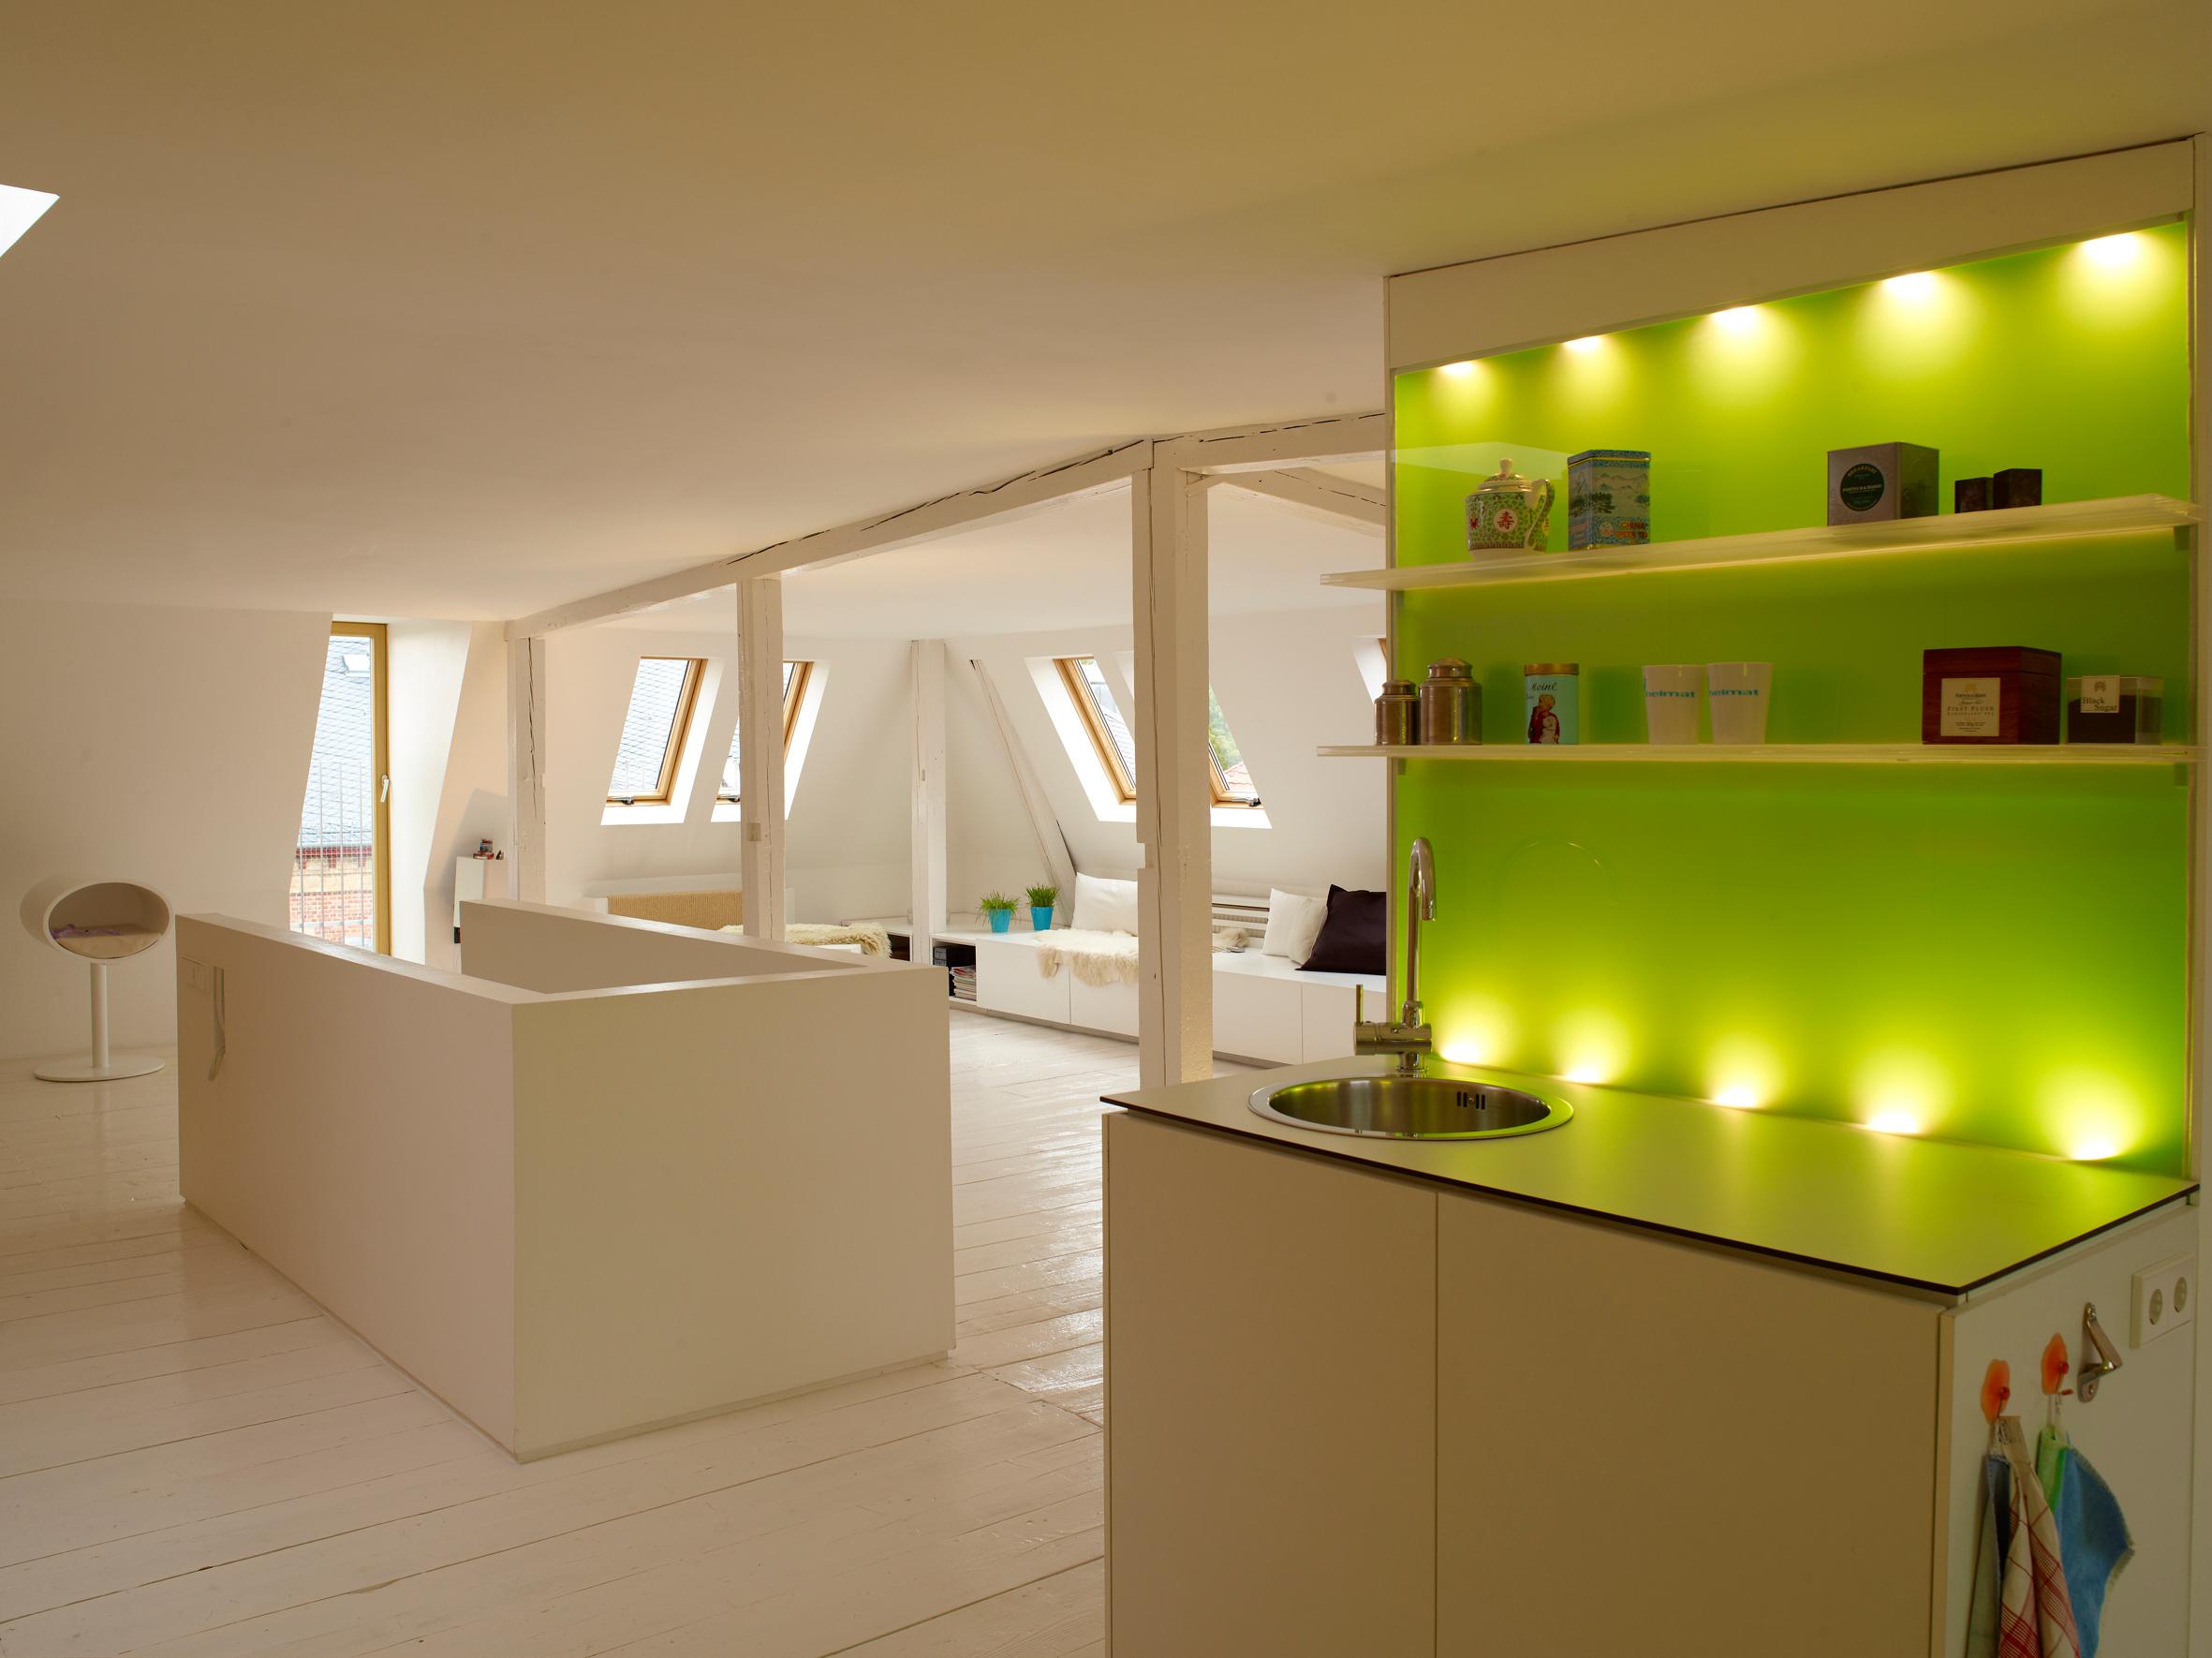 Offene Teeküche #küche #weißerbodenbelag #offeneküche #grünewandfarbe ©InteriorPark. GmbH